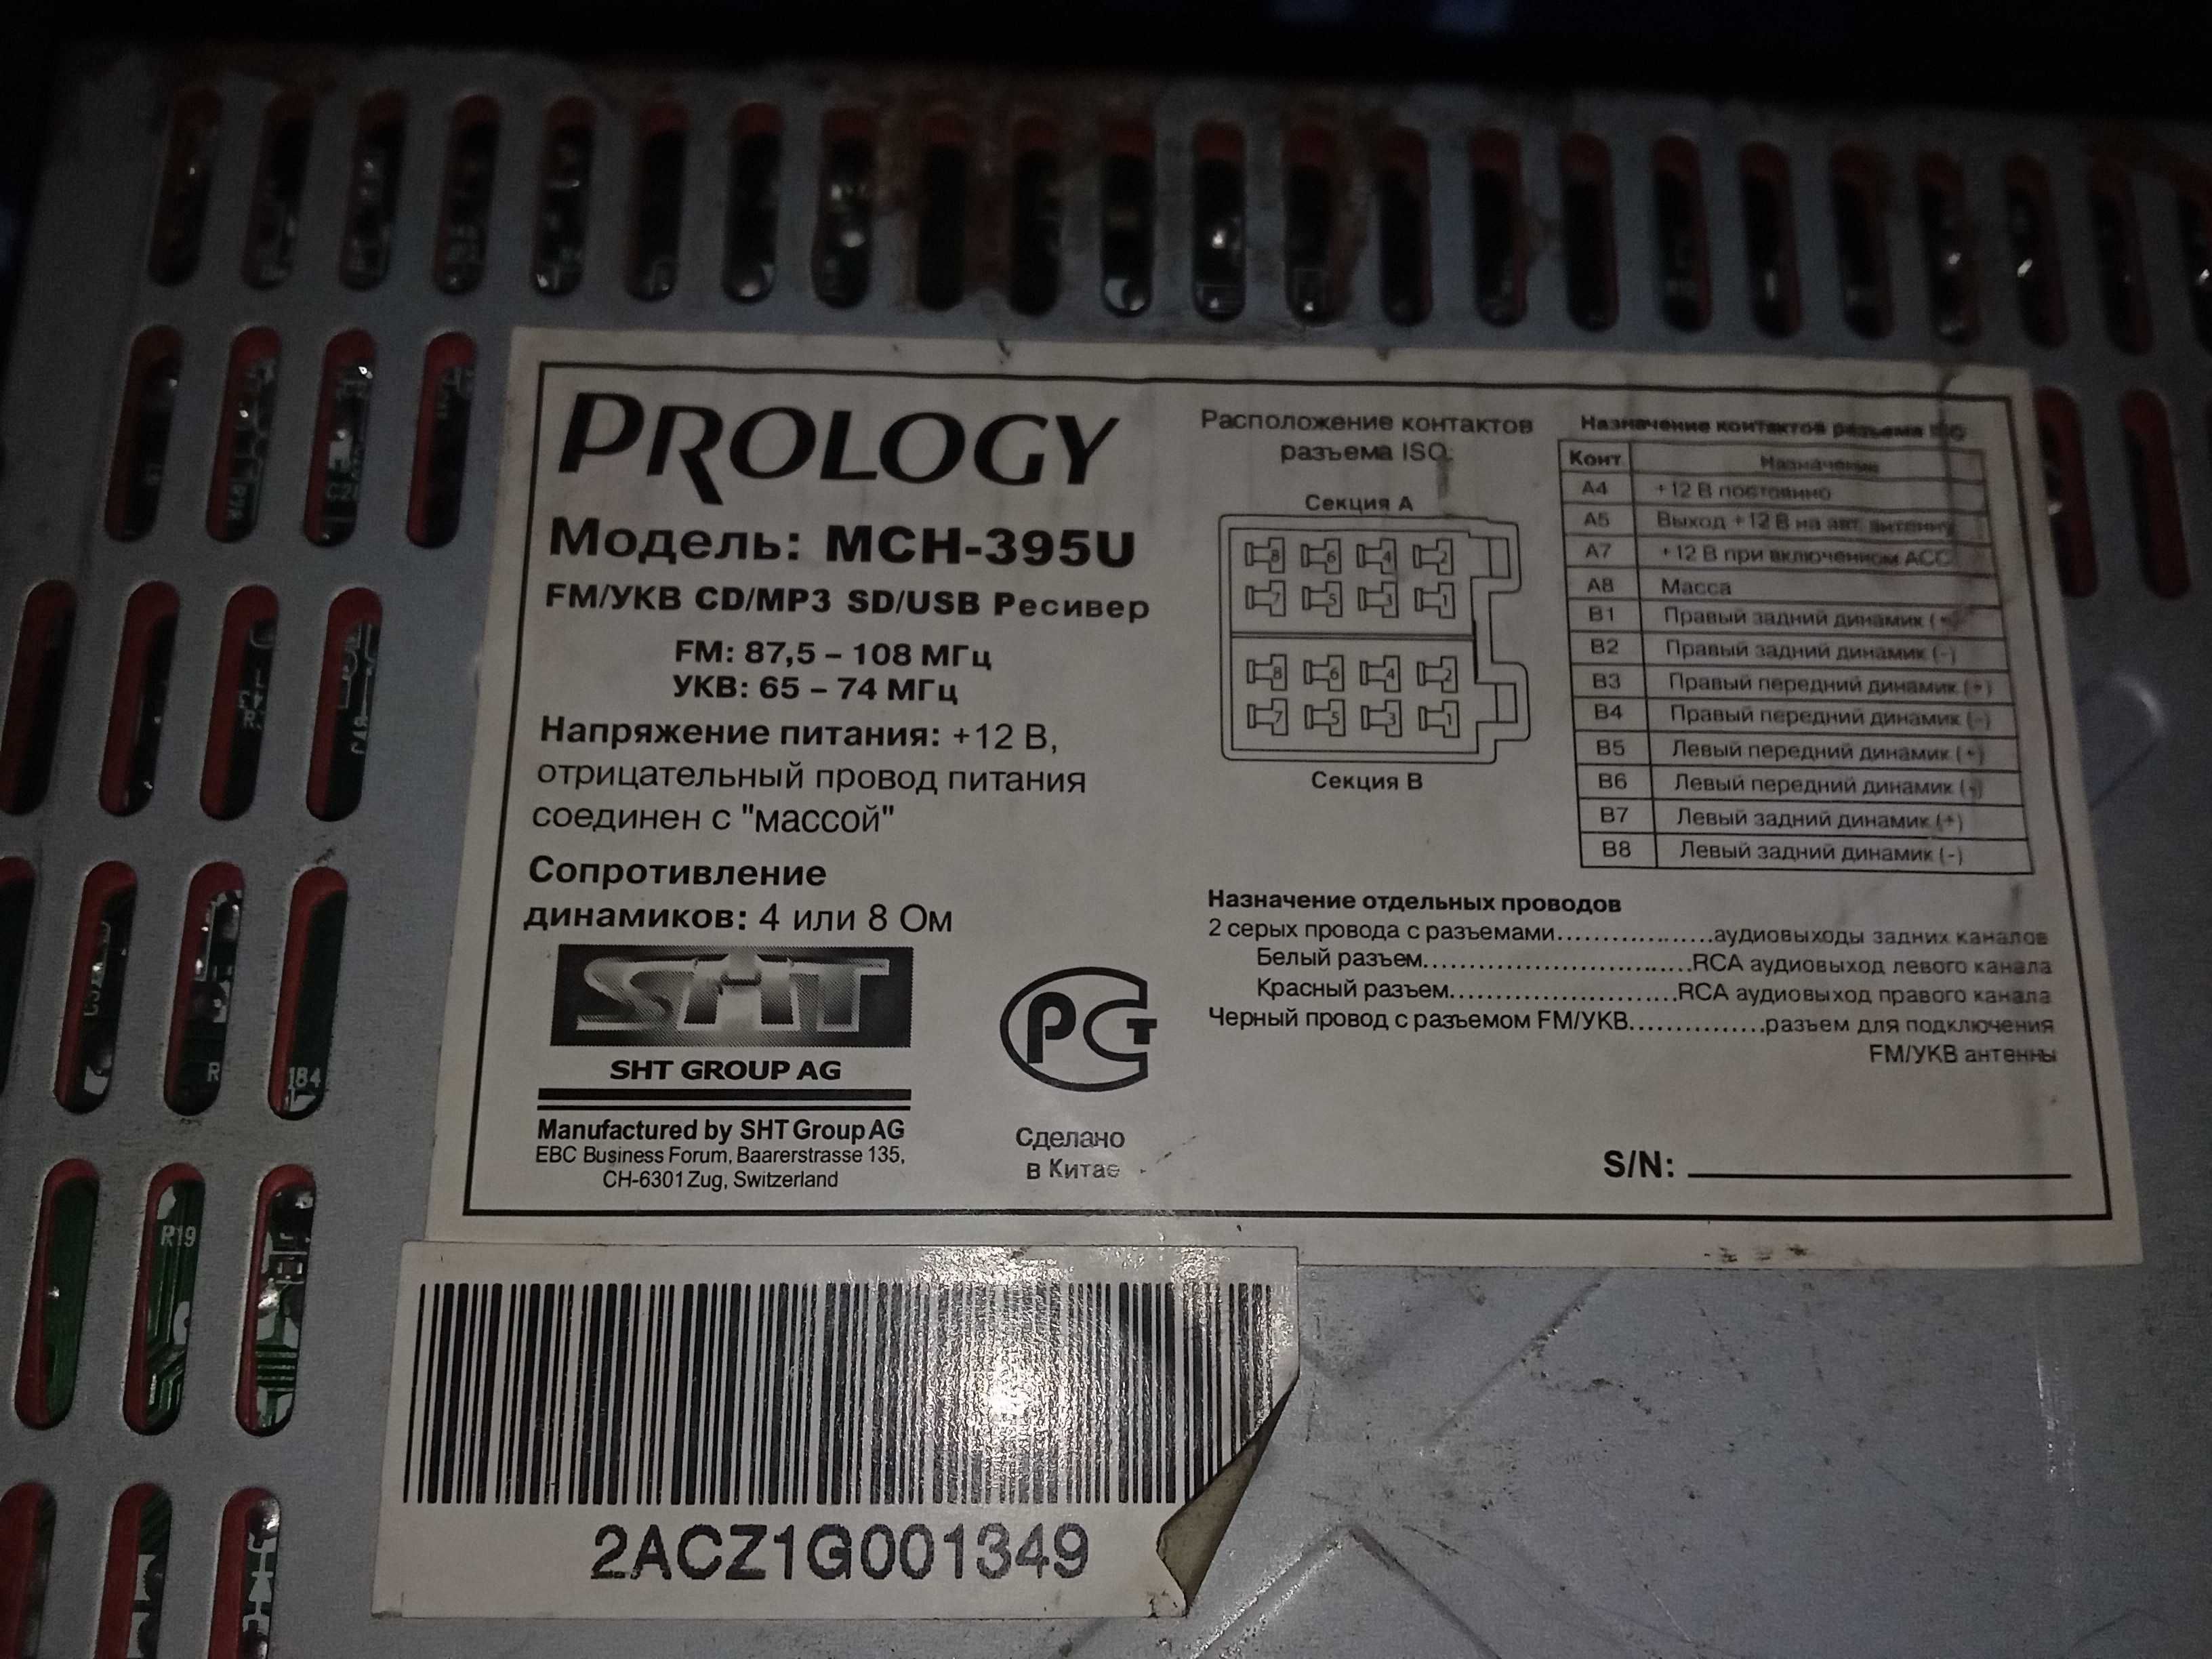 Автомагнитола Prology mch395 u